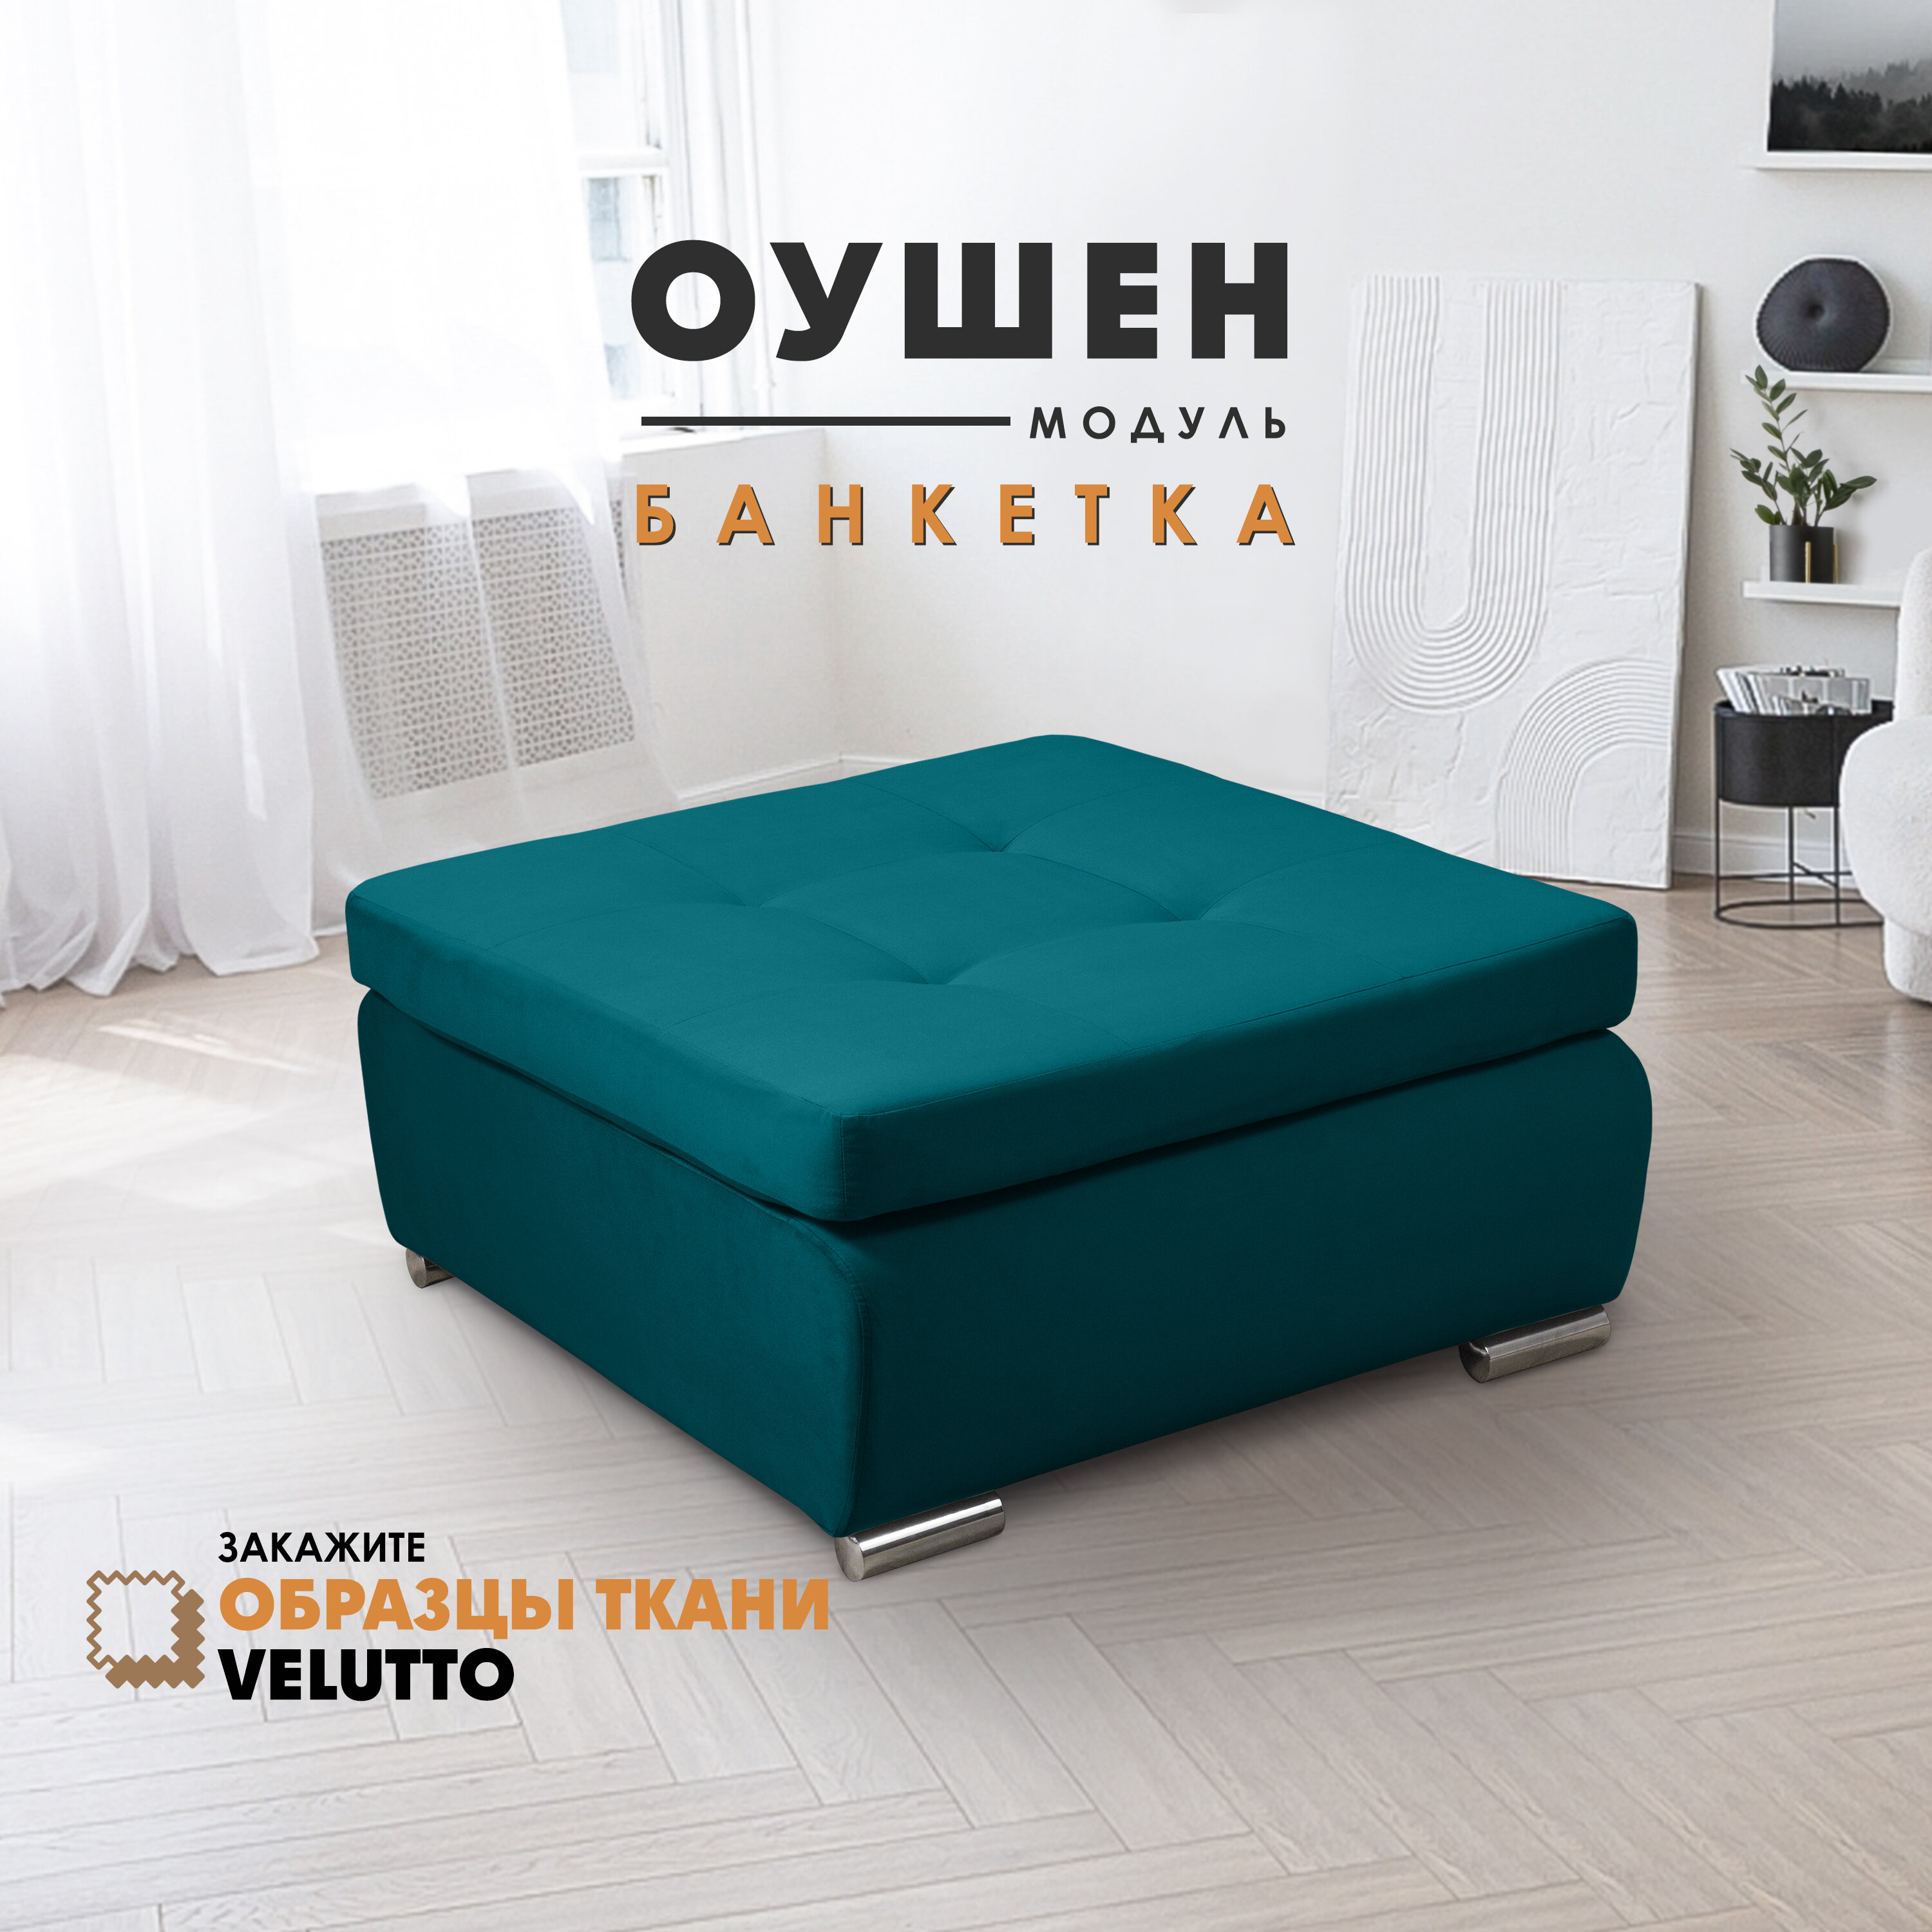 Банкетка "Оушен" (секция модульного дивана), Velutto 20 - фотография № 1